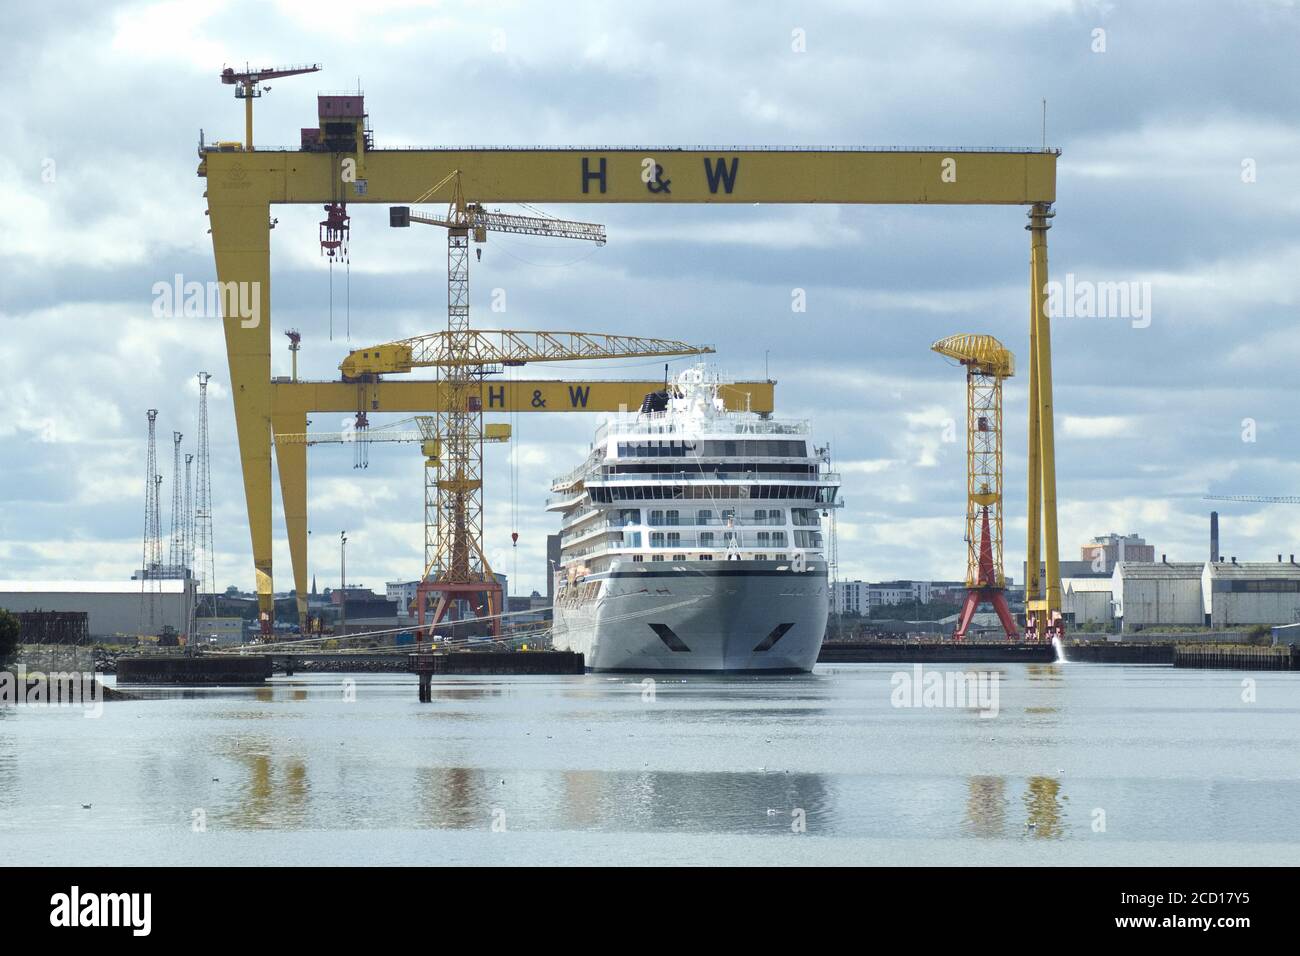 Viking Cruise Ship in Belfast Shipyard, mit den berühmten Samson und Goliath Cranes, die beim Bau der Titanic mithalfen Stockfoto